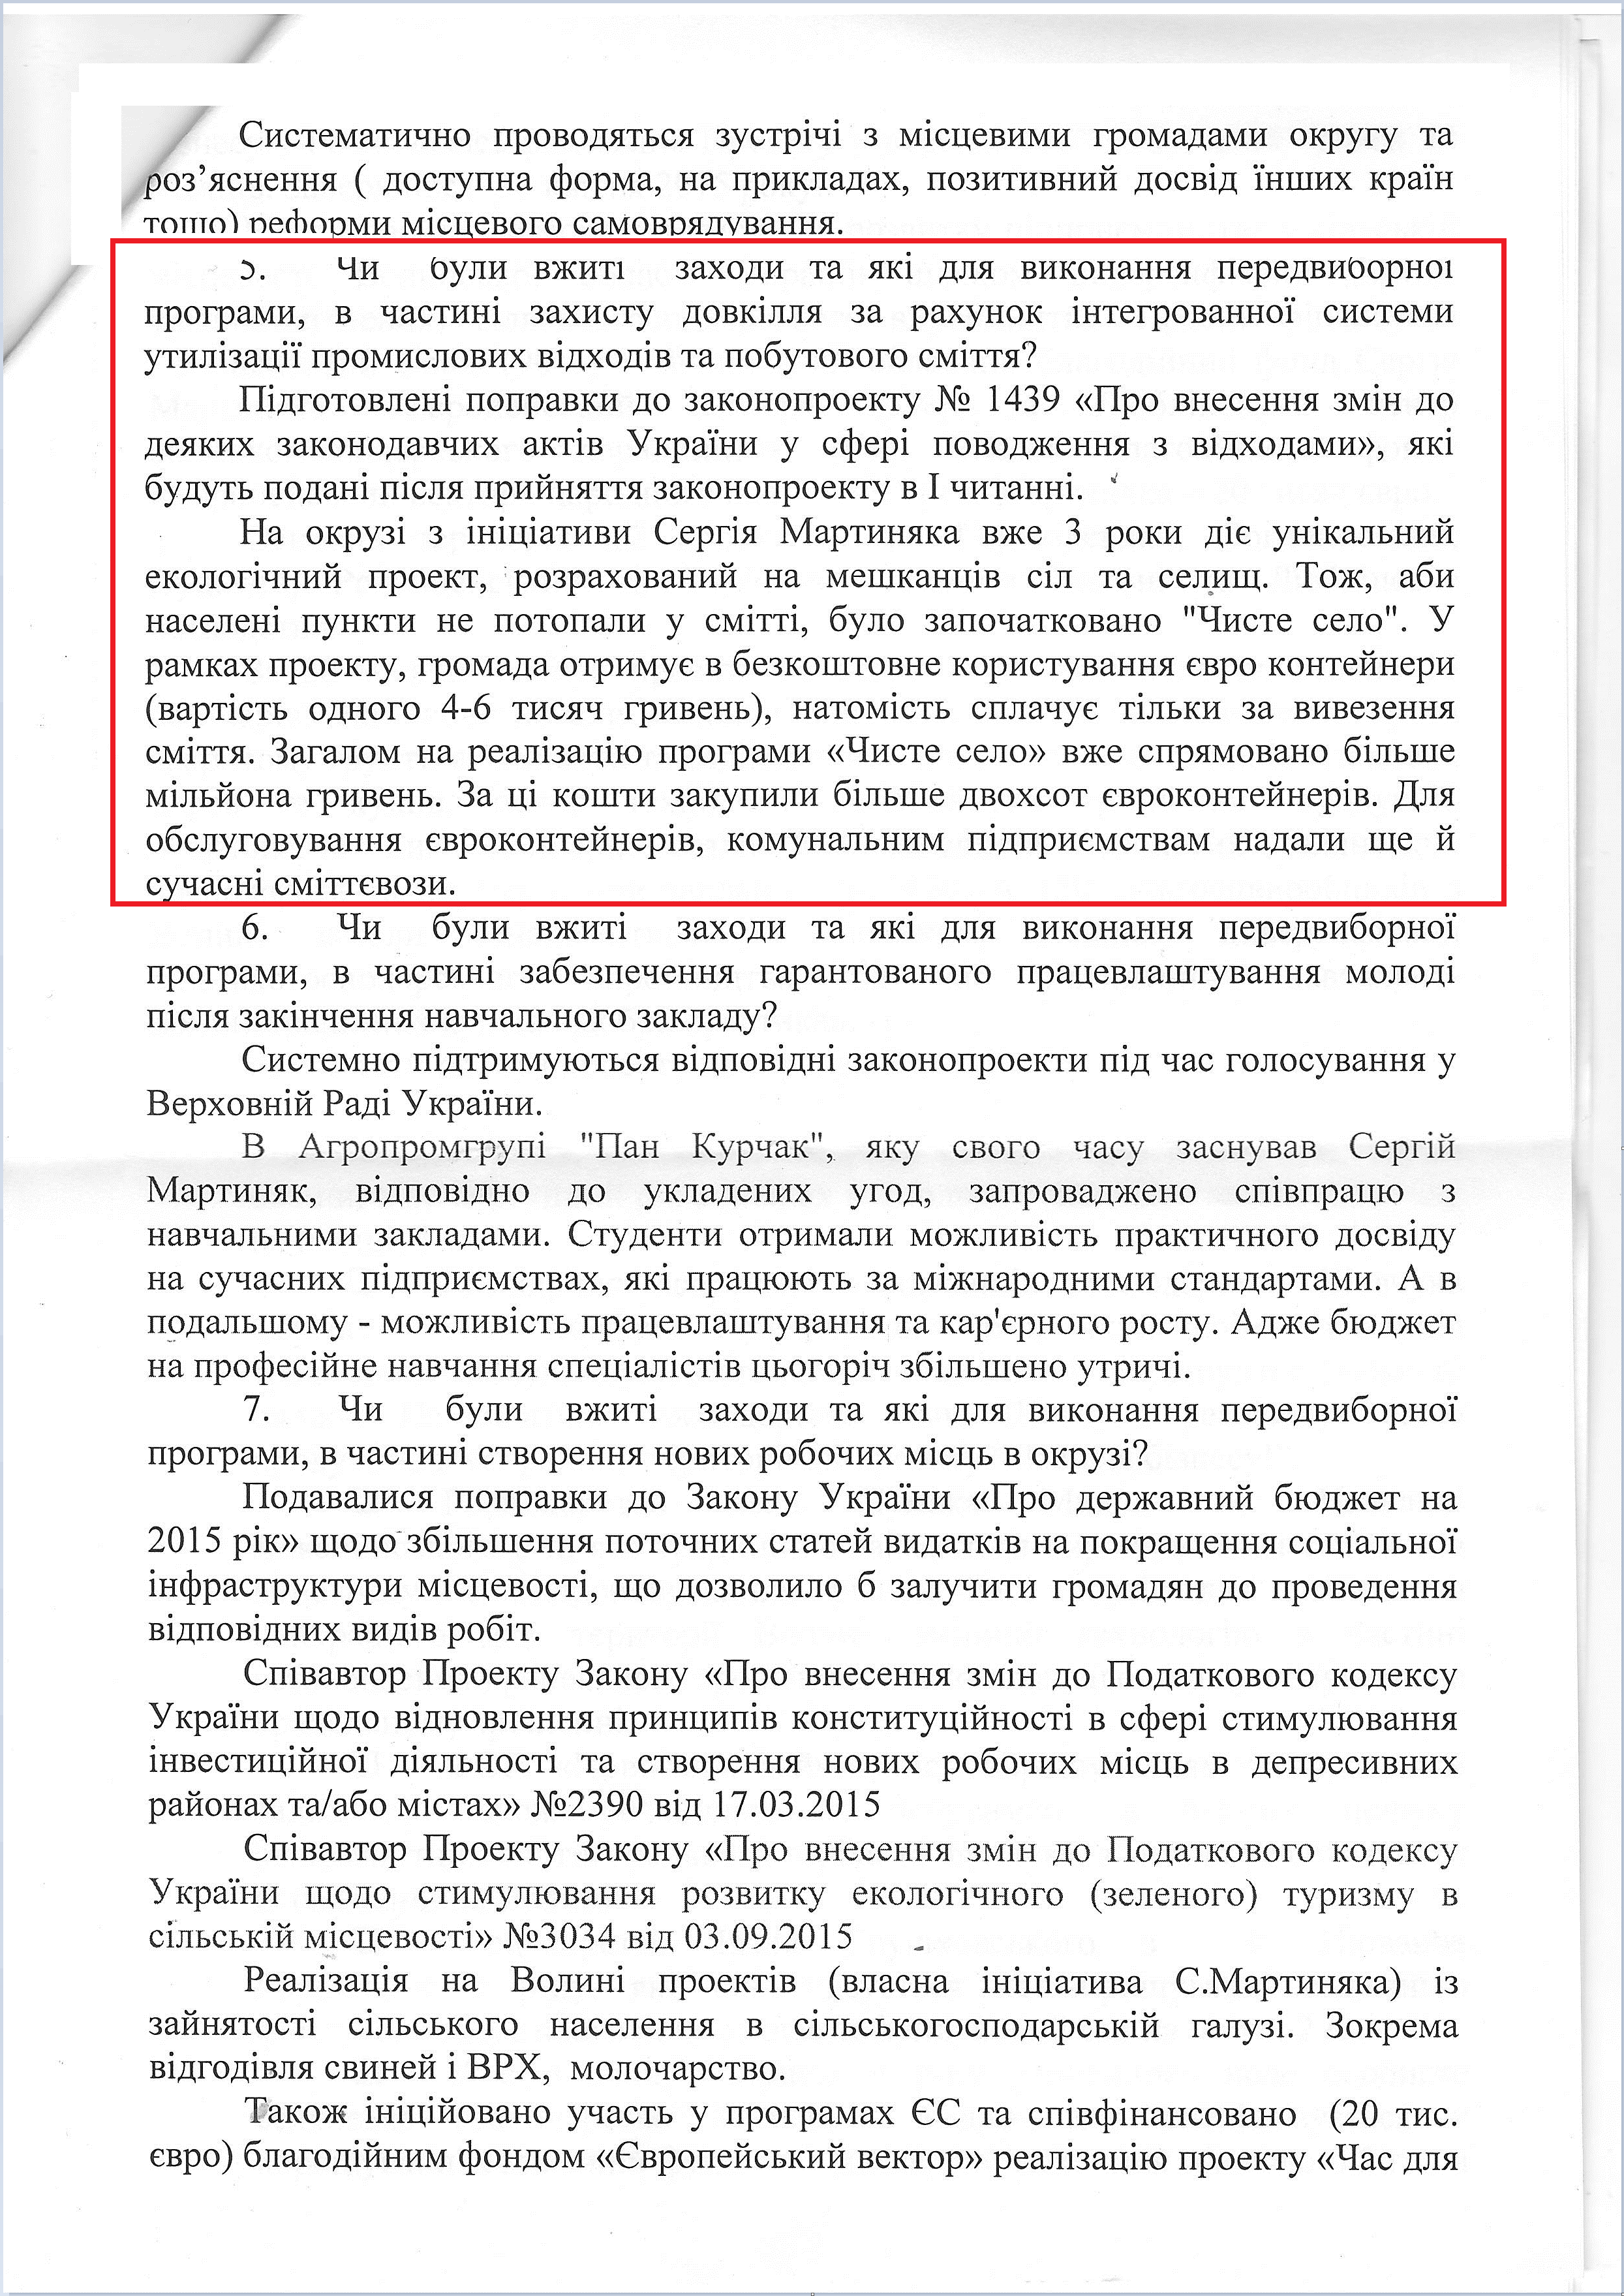 Лист народного депутата Сергія Мартиняка №76/15 від 8 вересня 2015 року